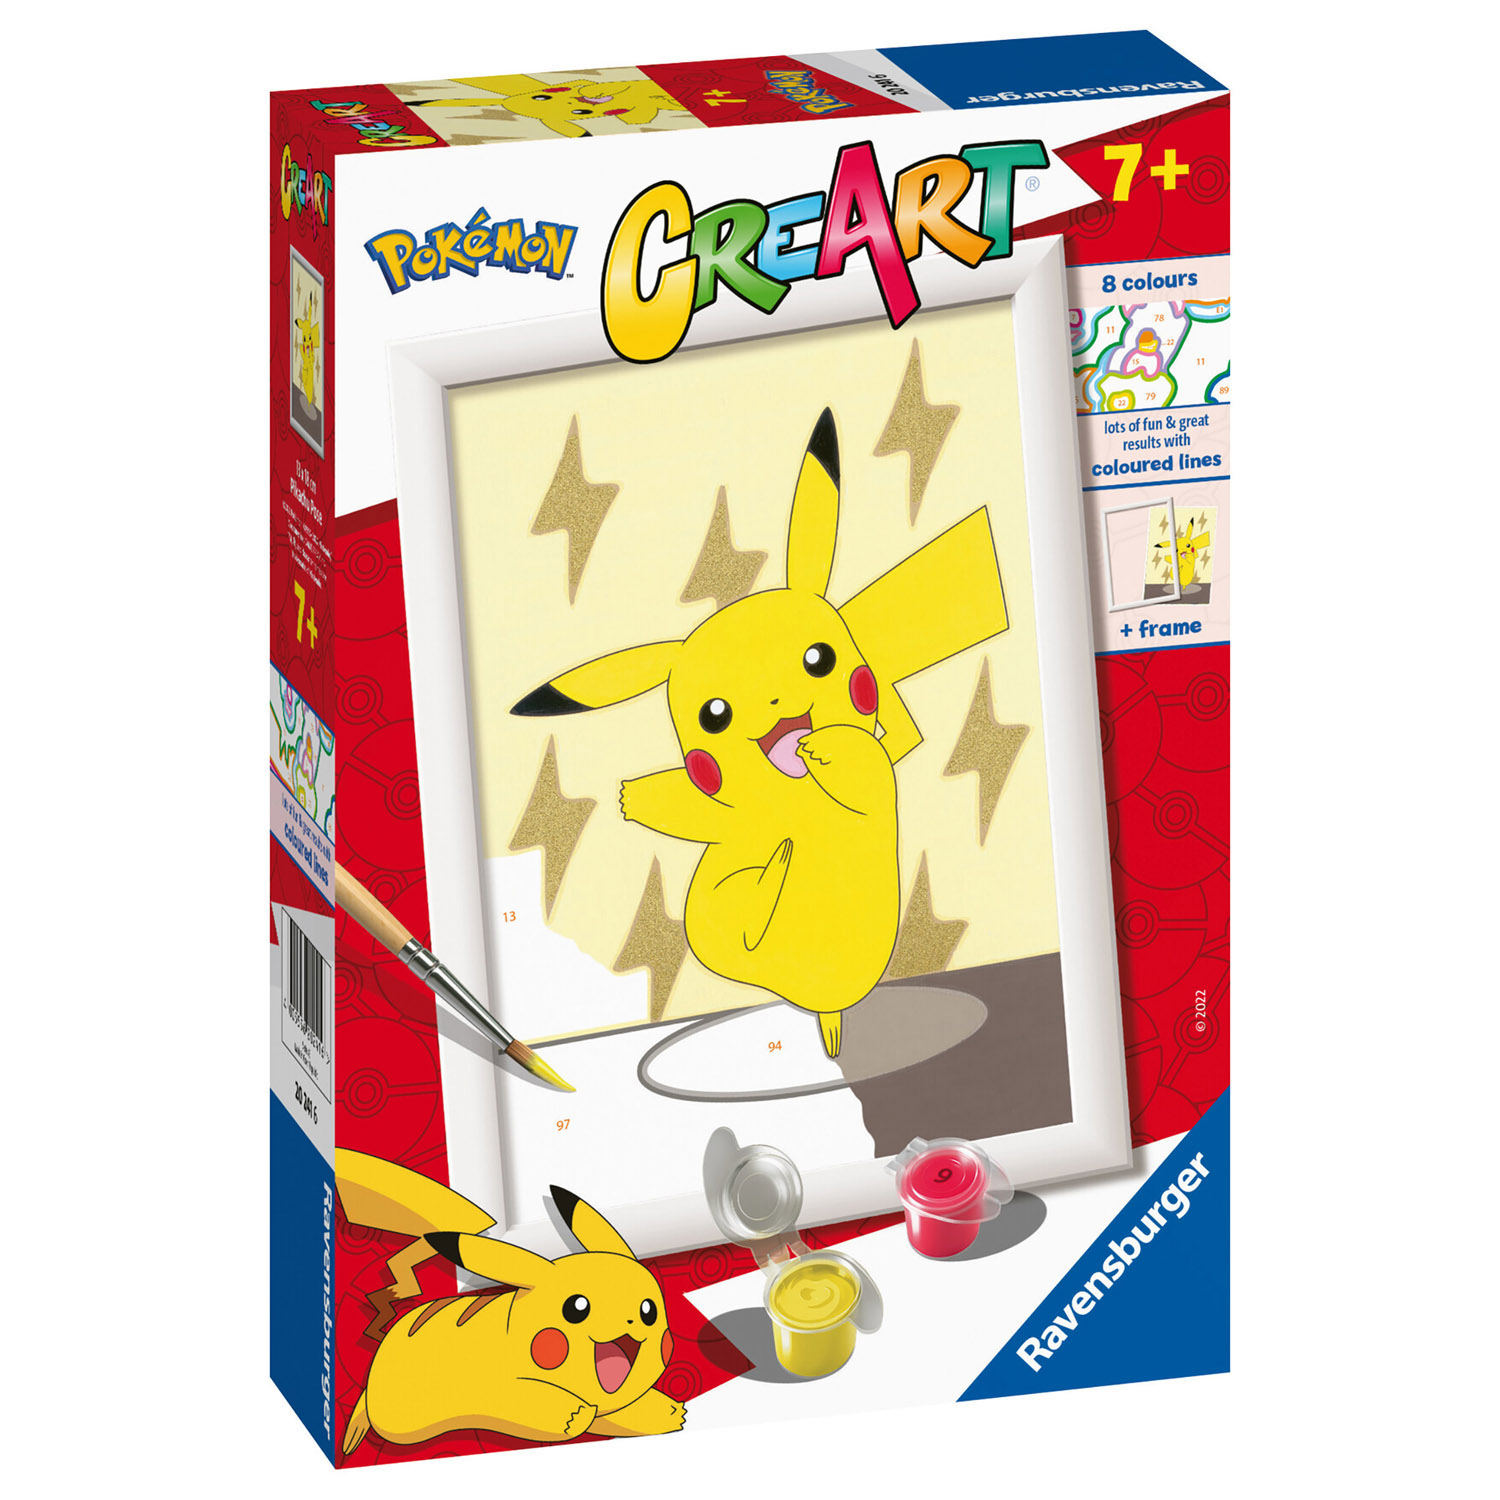 Creart Pokémon Pikachu, Kit per dipingere con i numeri - Creart